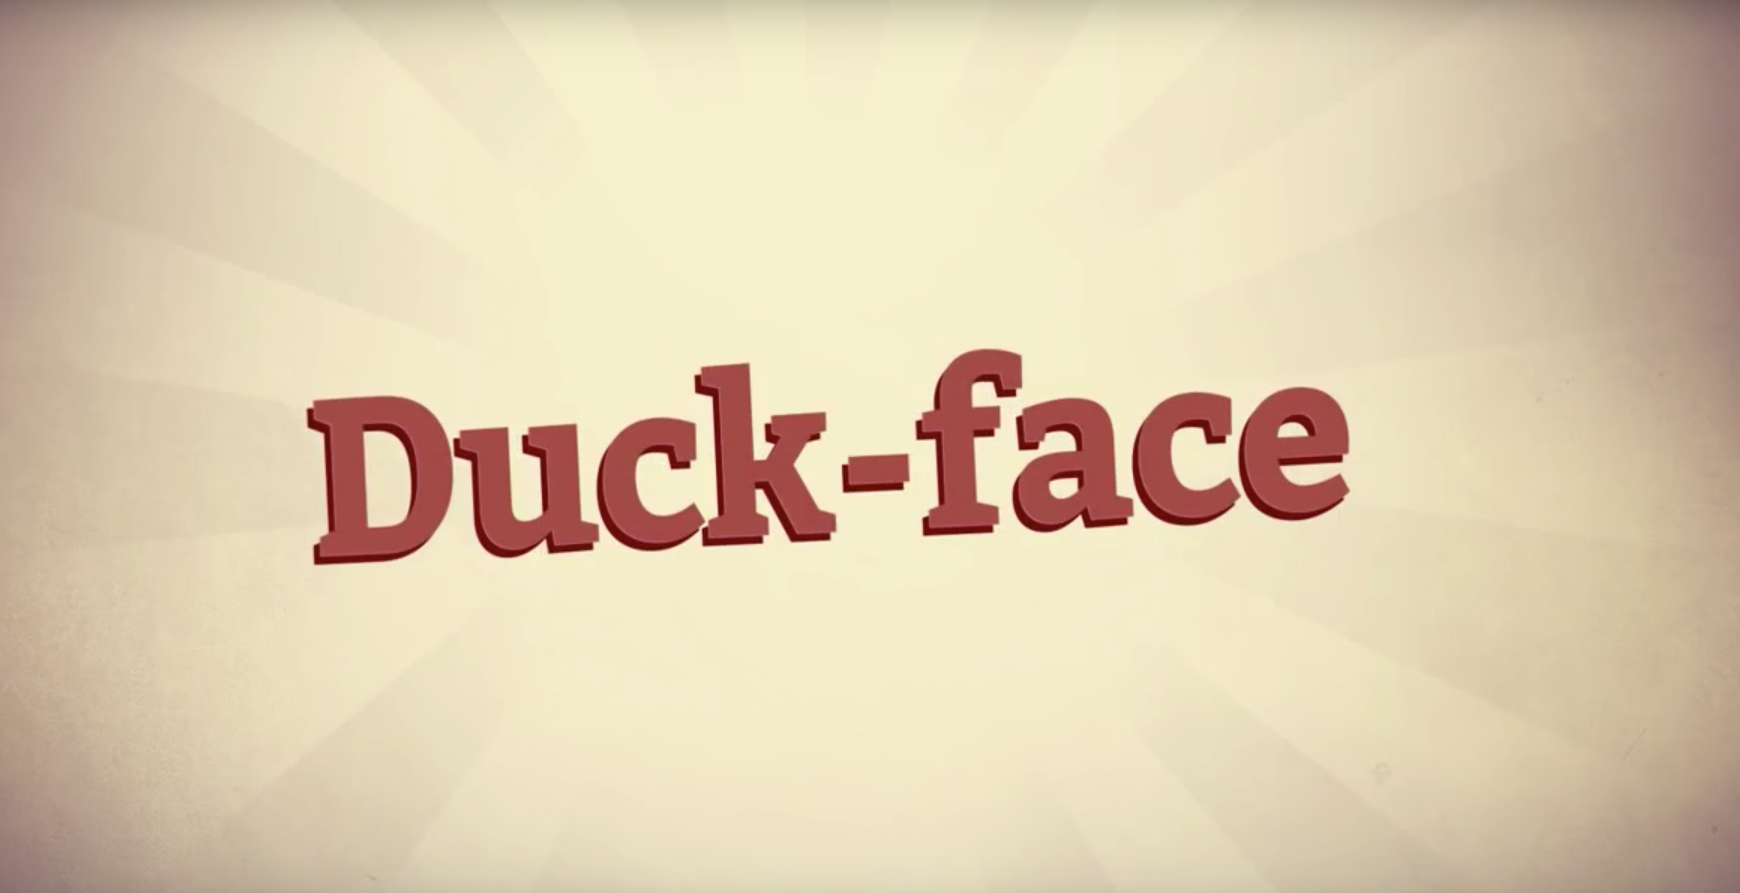 Duck-face!